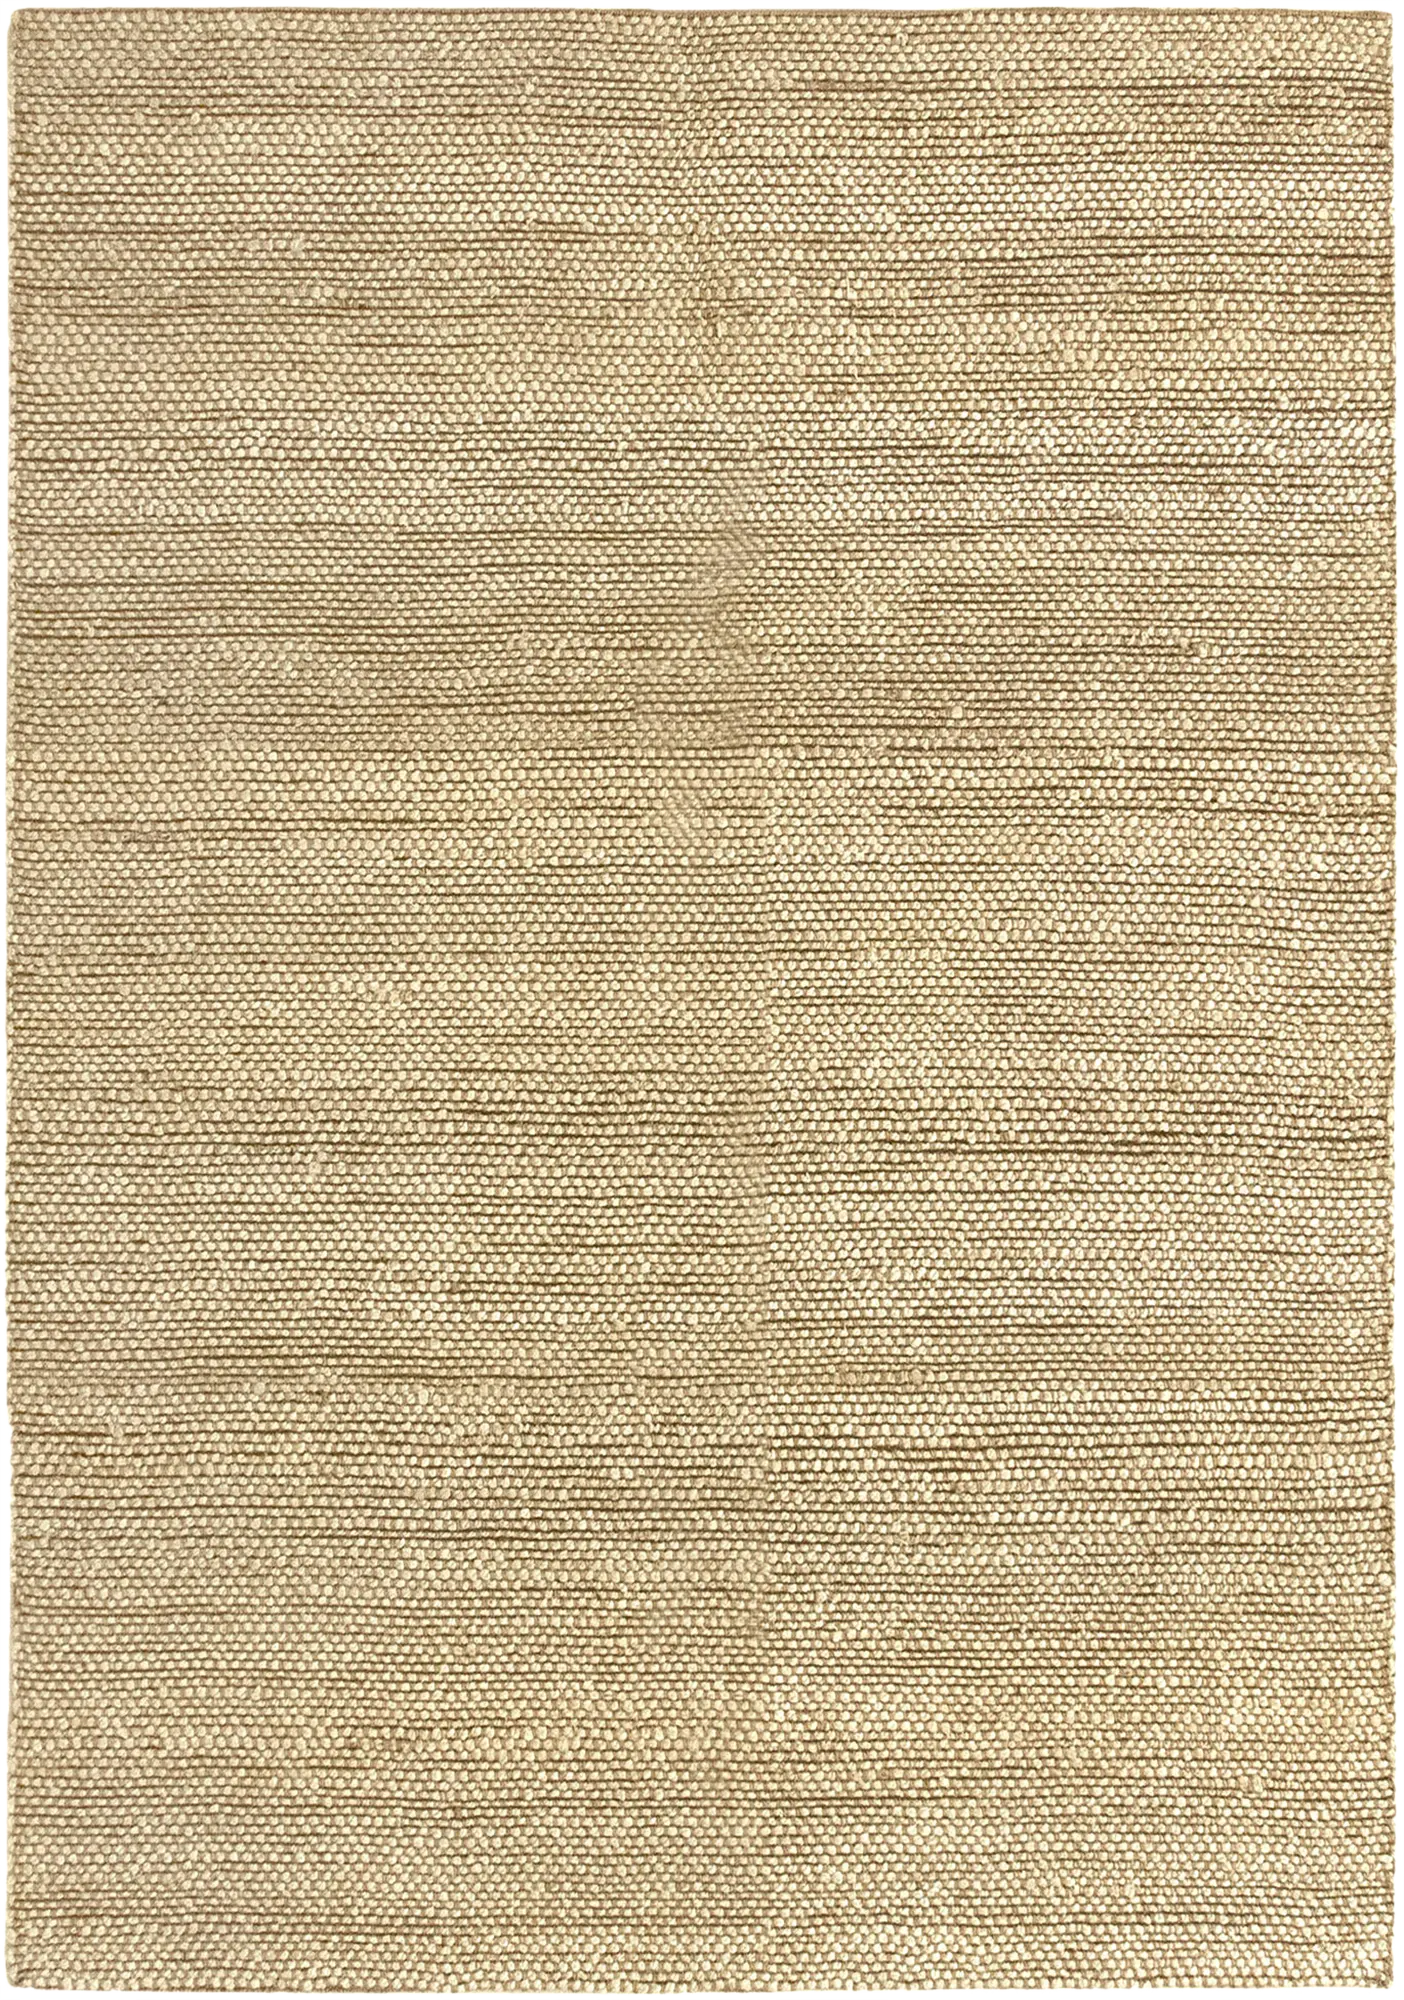 Alfombra yute giralda fibra natural / blanco 200x290cm